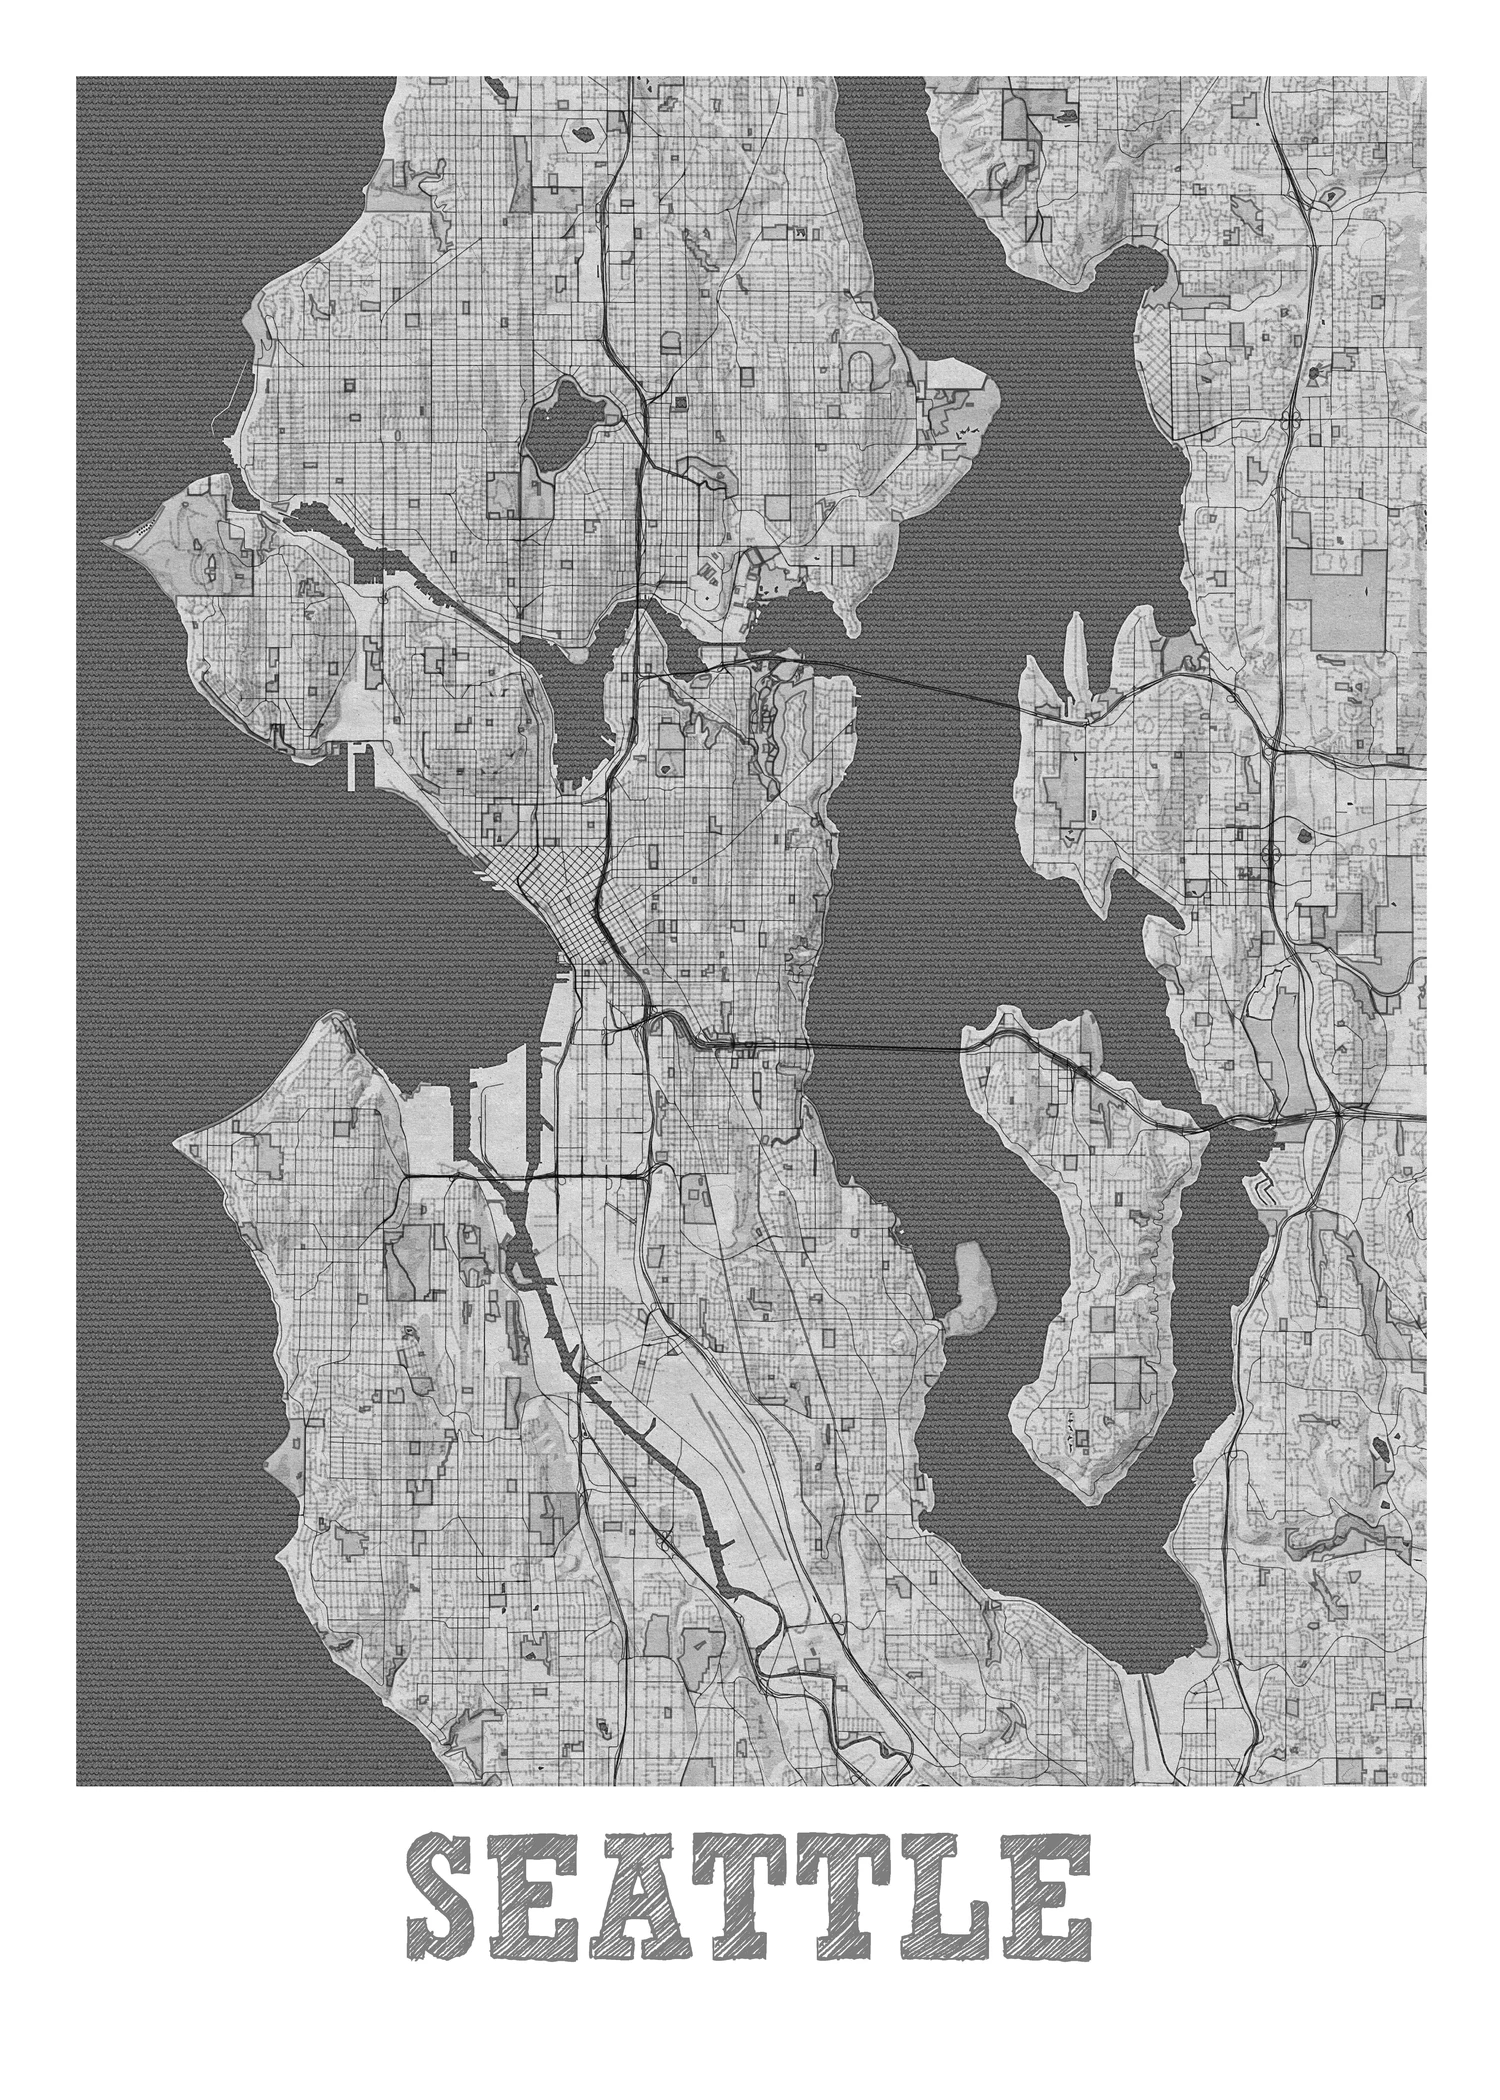 2314 100款铅笔手绘城市地图设计素材Pencil City Map Bundle